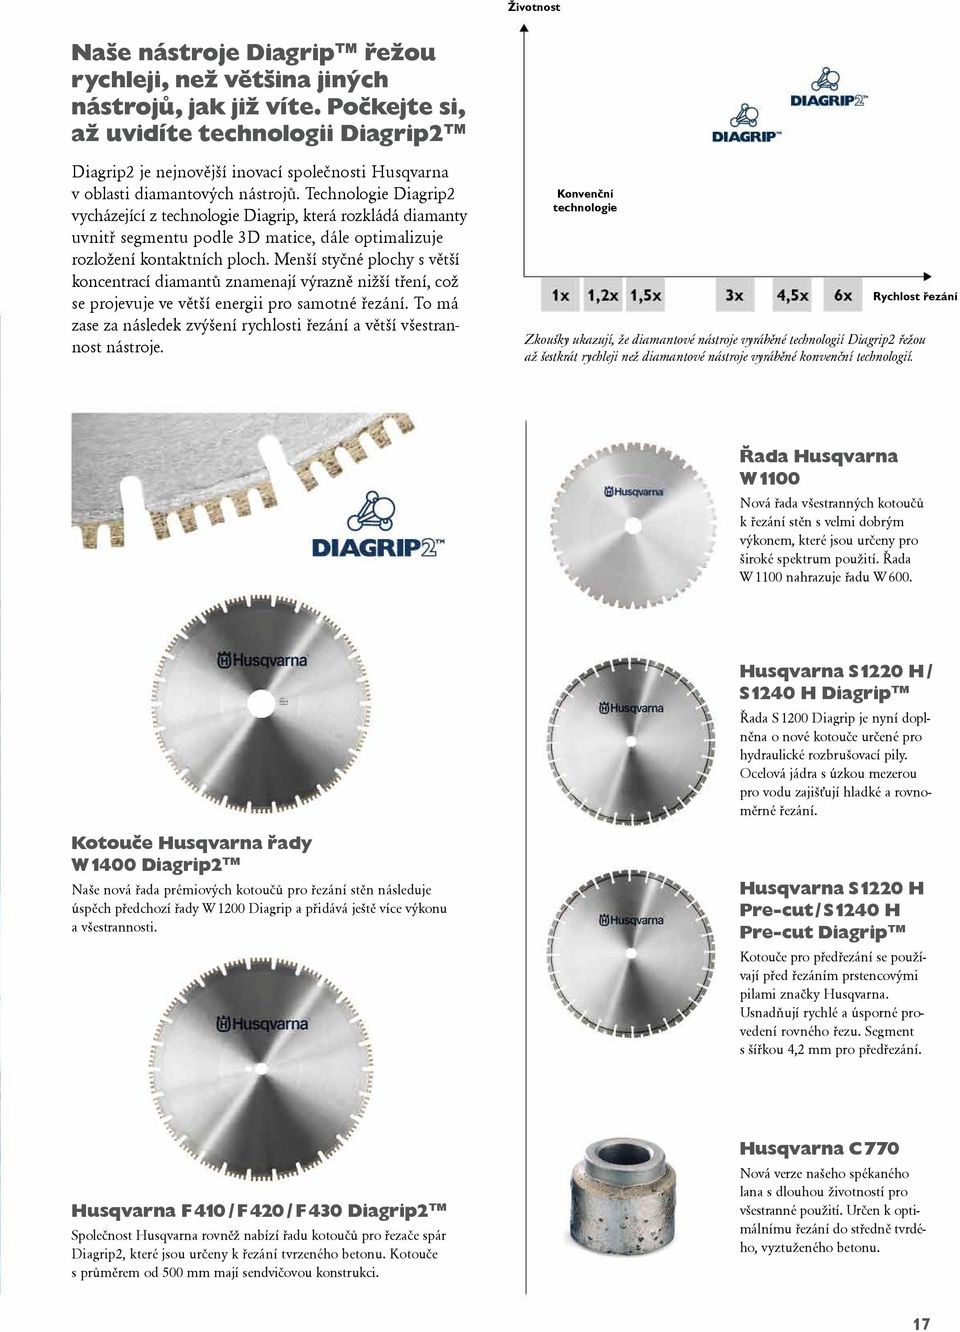 Technologie Diagrip2 vycházející z technologie Diagrip, která rozkládá diamanty uvnitř segmentu podle 3D matice, dále optimalizuje rozložení kontaktních ploch.